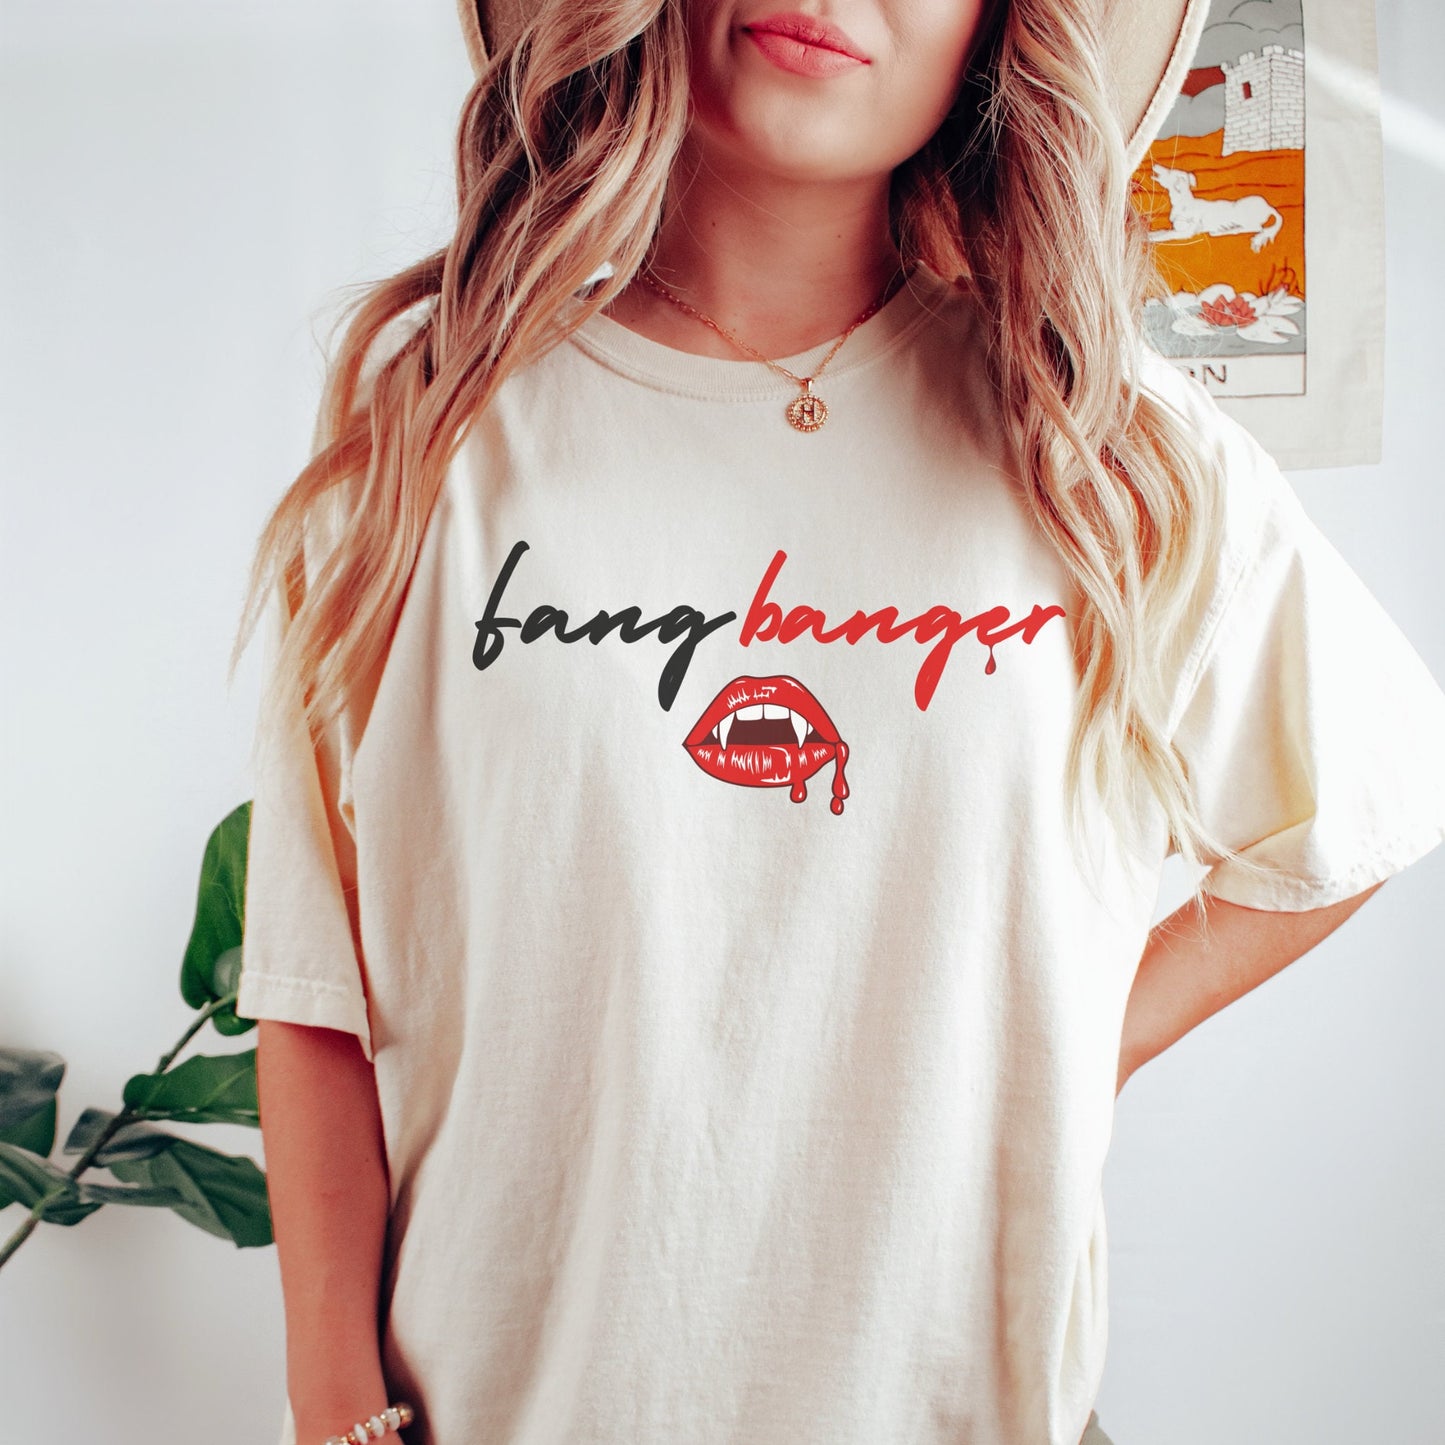 True Blood Shirt, Fangtasia Vampire Shirt, True blood fan shirt, Comfort Colors, Vampire shirt, Fangbanger